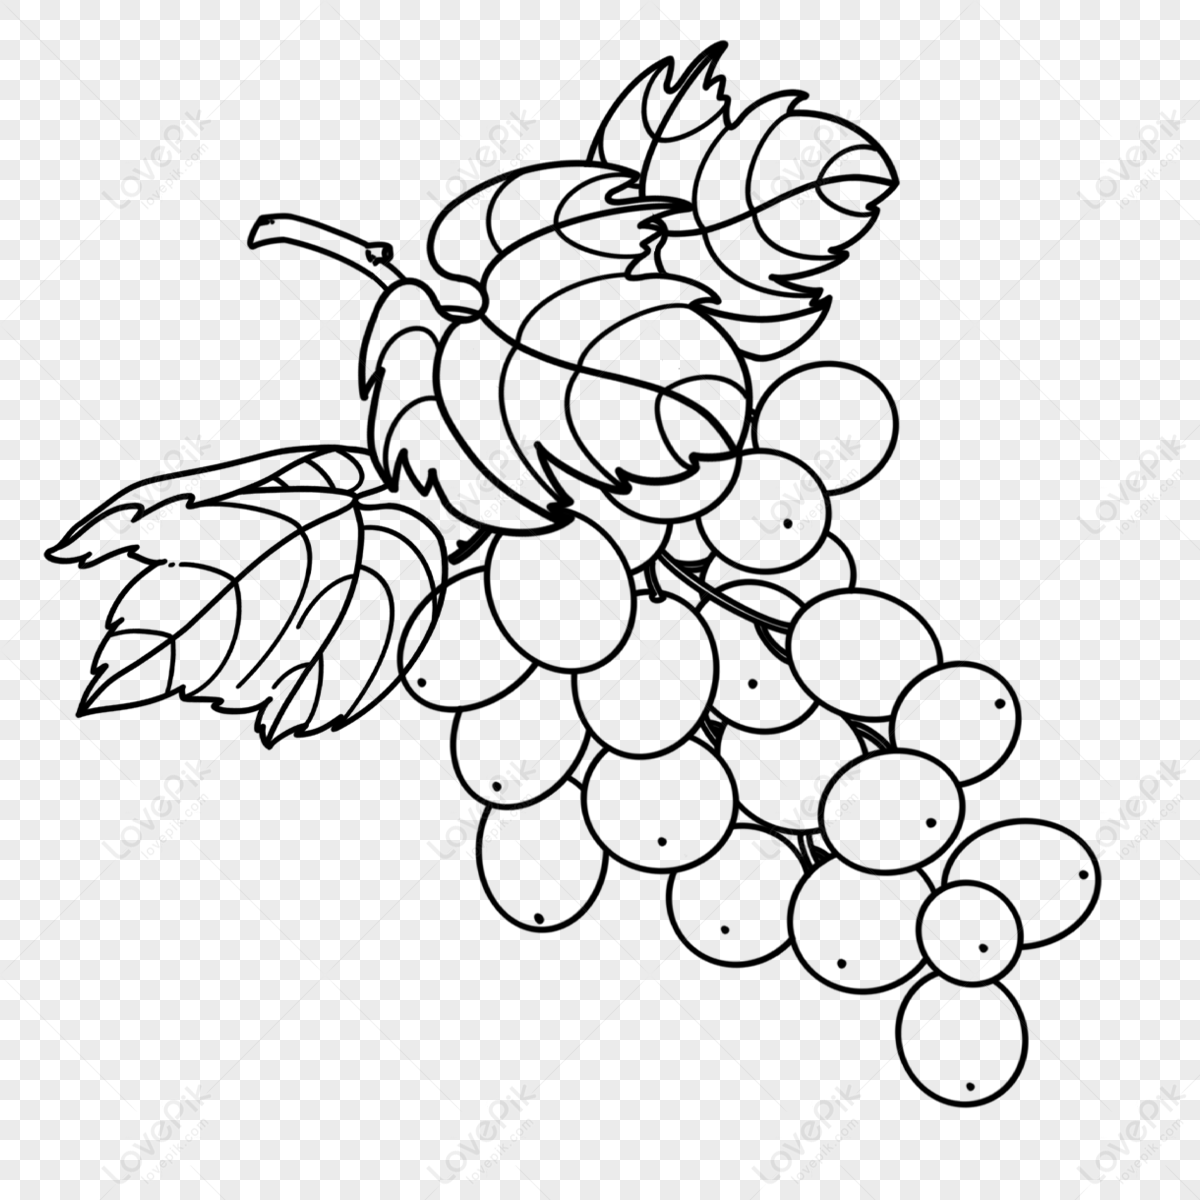 grape vine leaf cartoon vector illustration